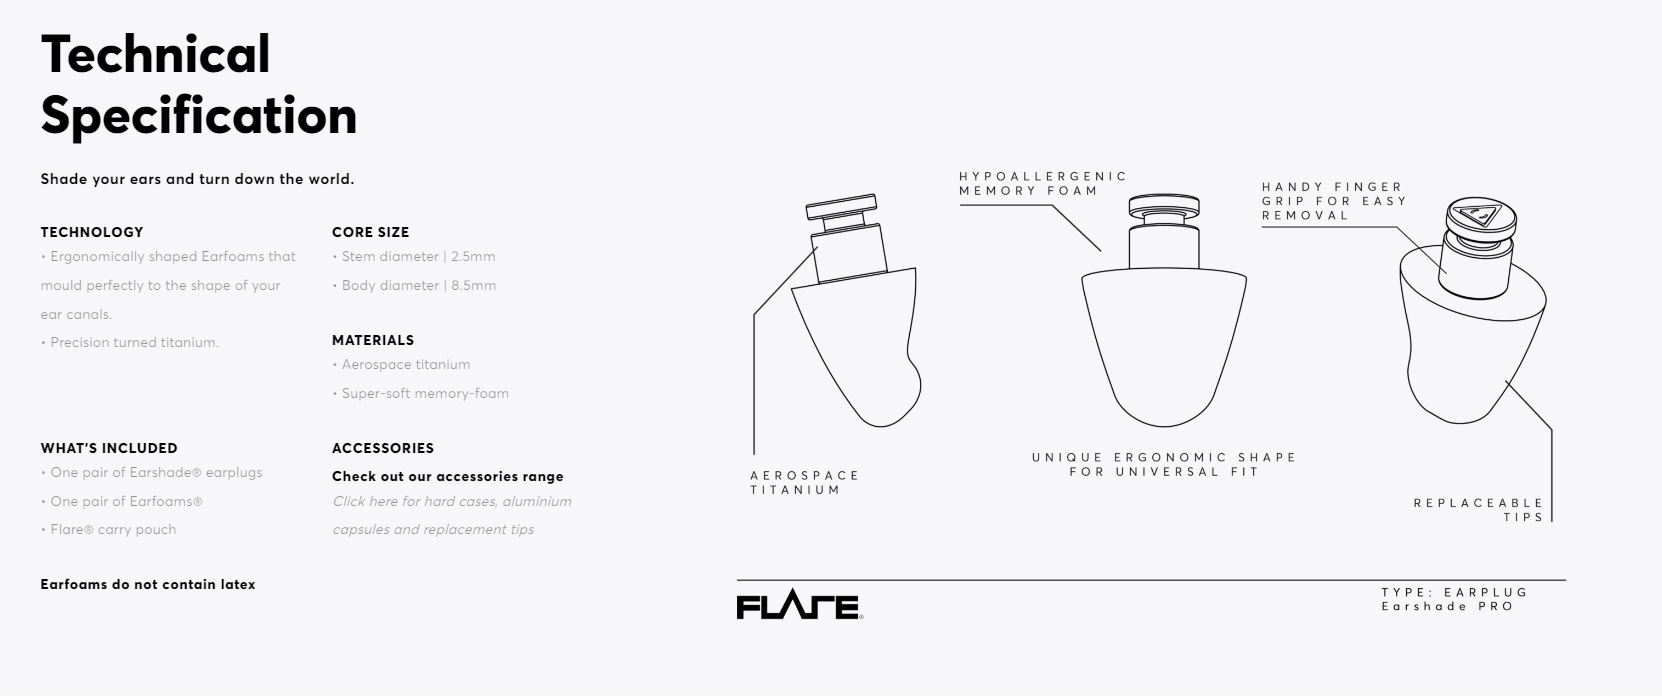 Flare Audio Earplugs Earshade Pro titanium Black